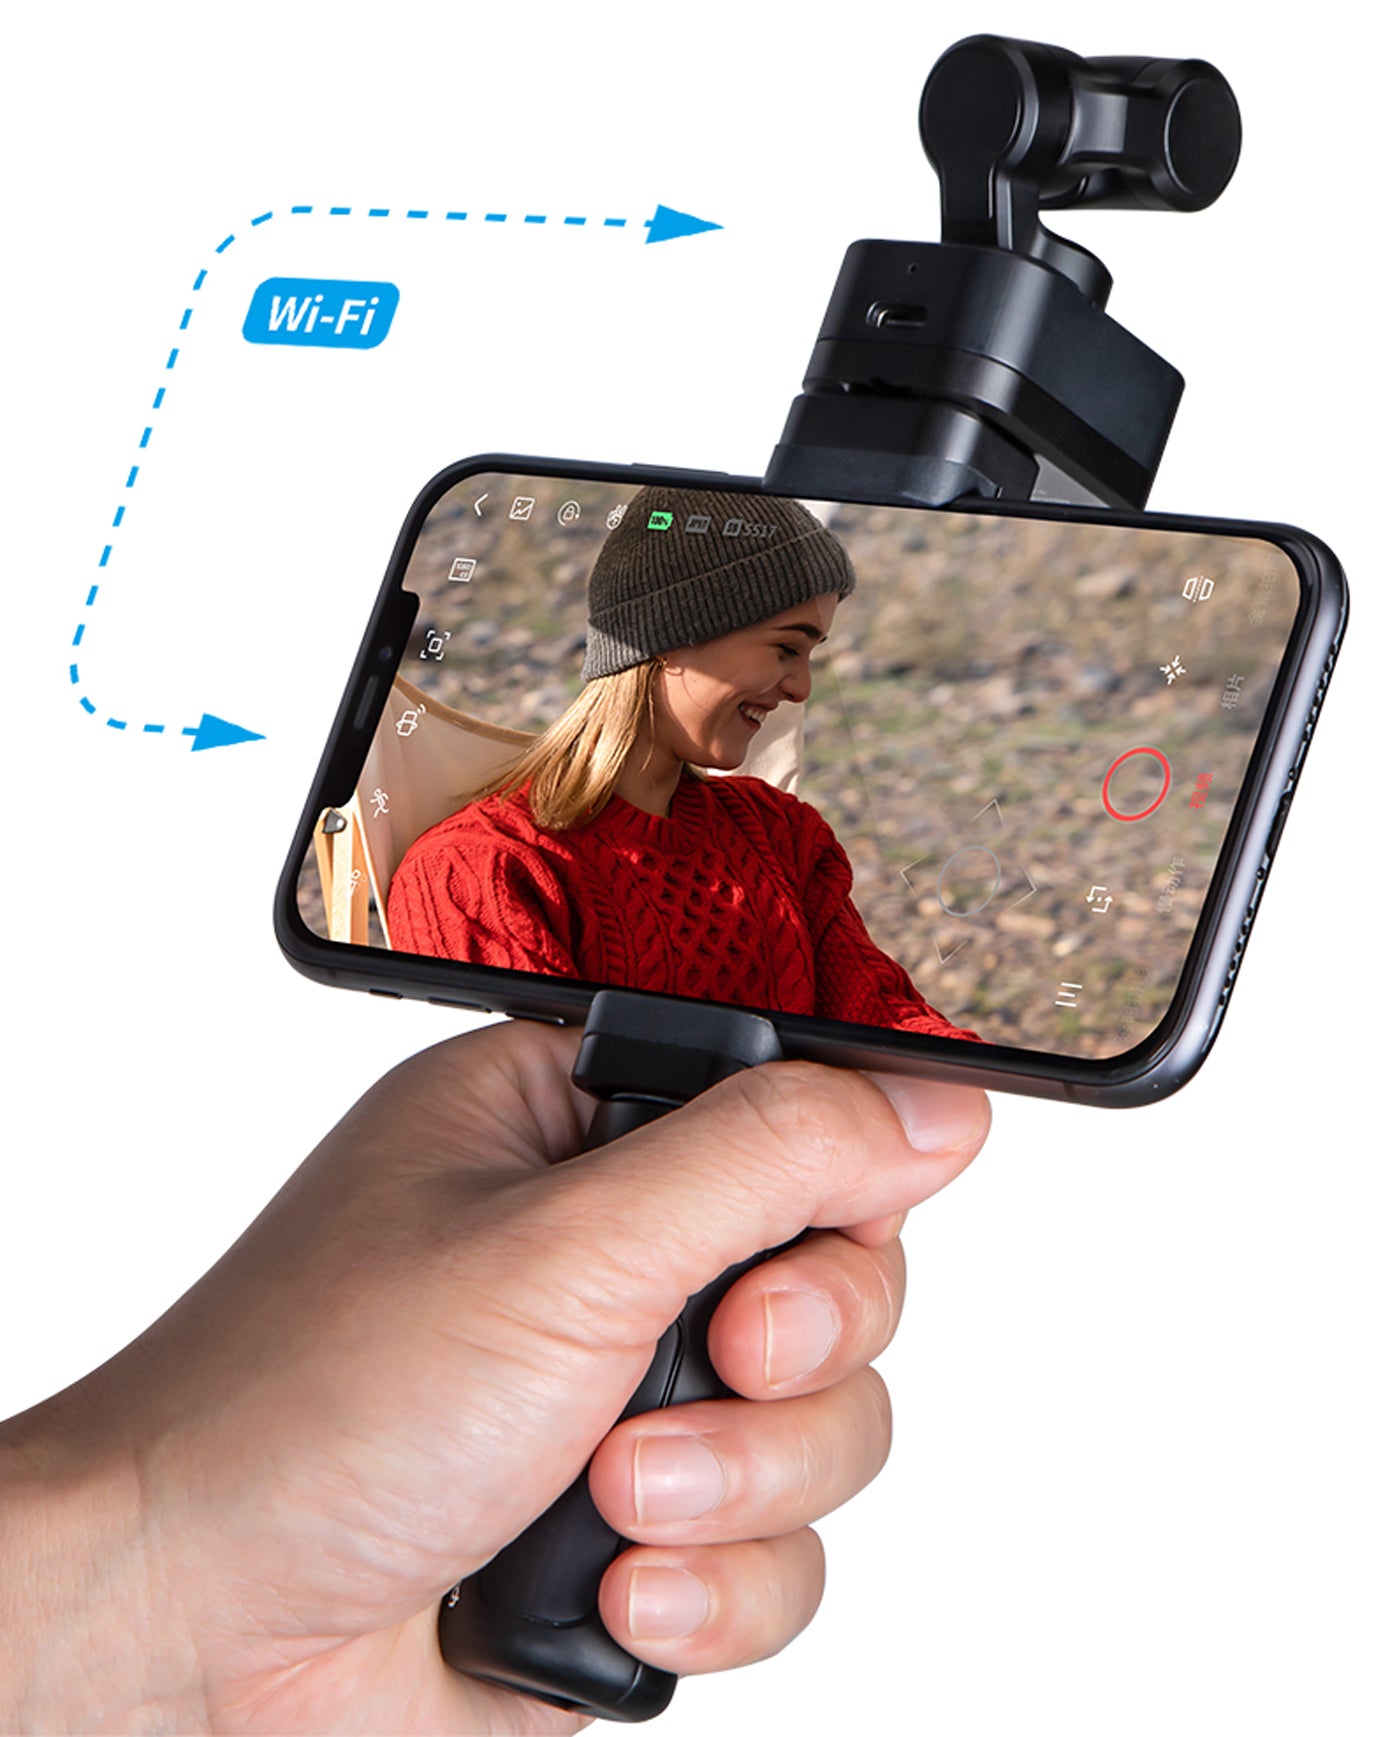 Feiyu Pocket 3 kabellose abnehmbare 3-Achsen-stabilisierte Kamera im Überblick